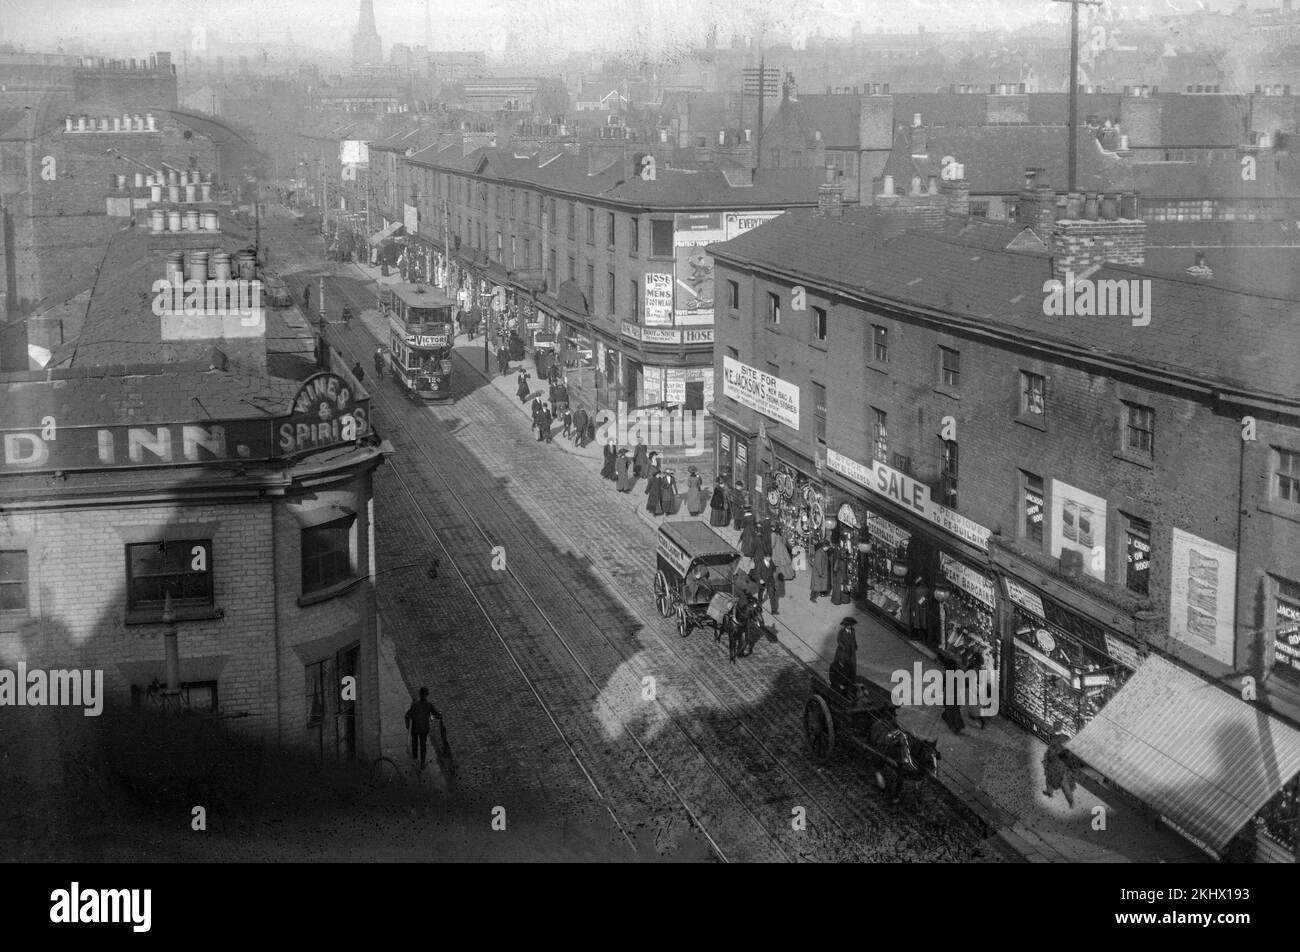 Una fotografía victoriana en blanco y negro que muestra una calle concurrida en Nottingham, Inglaterra. Hay carruajes tirados por caballos, tiendas y un autobús de tranvía, junto con muchas personas. Foto de stock